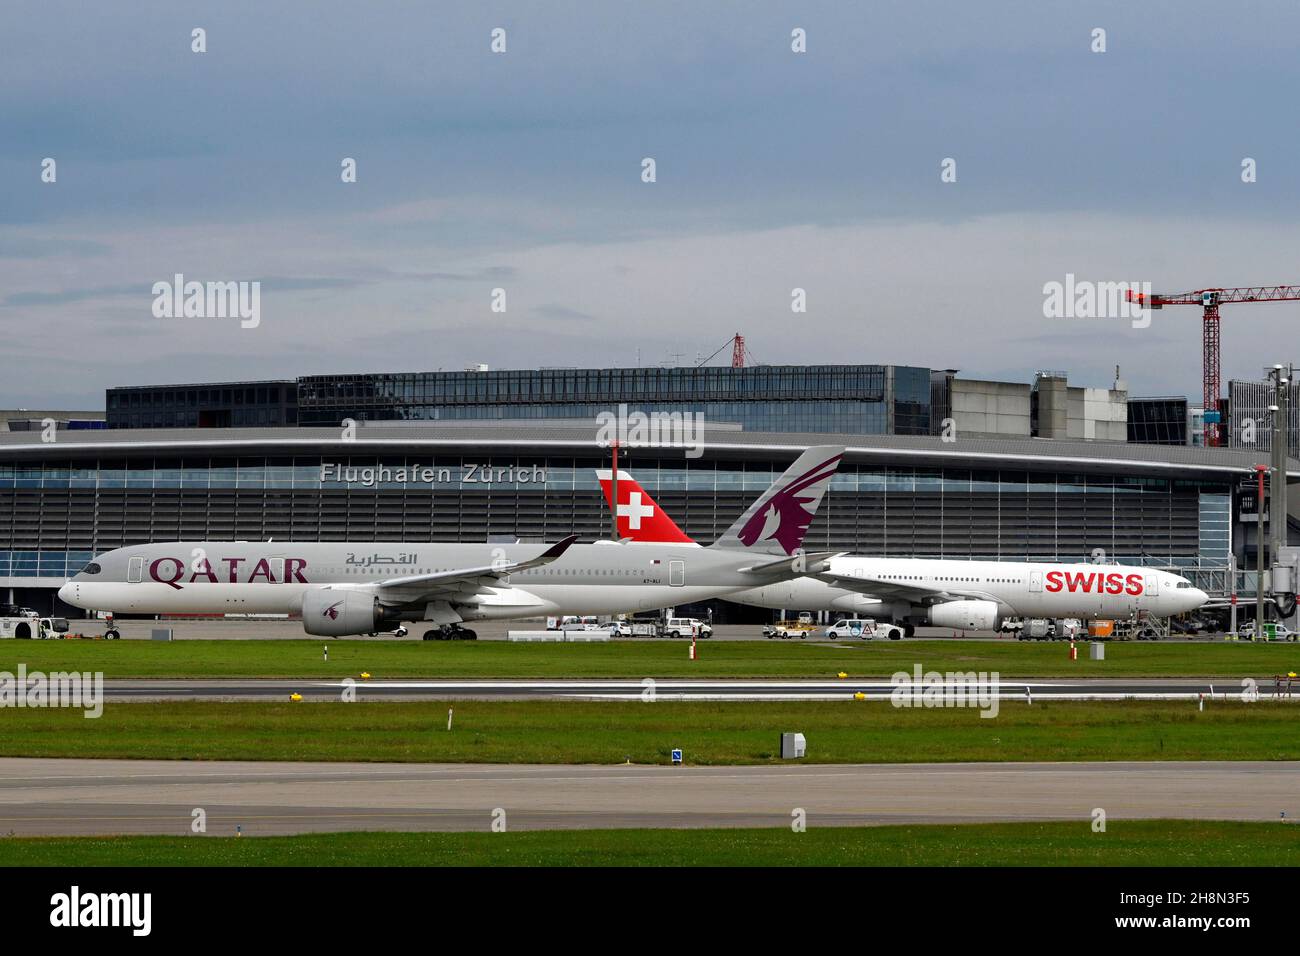 Aircraft Qatar Airways, Airbus A350-900, A7-ALI, r. Swiss Airbus A330-300, HB-JHE, Zurich Kloten, Switzerland Stock Photo